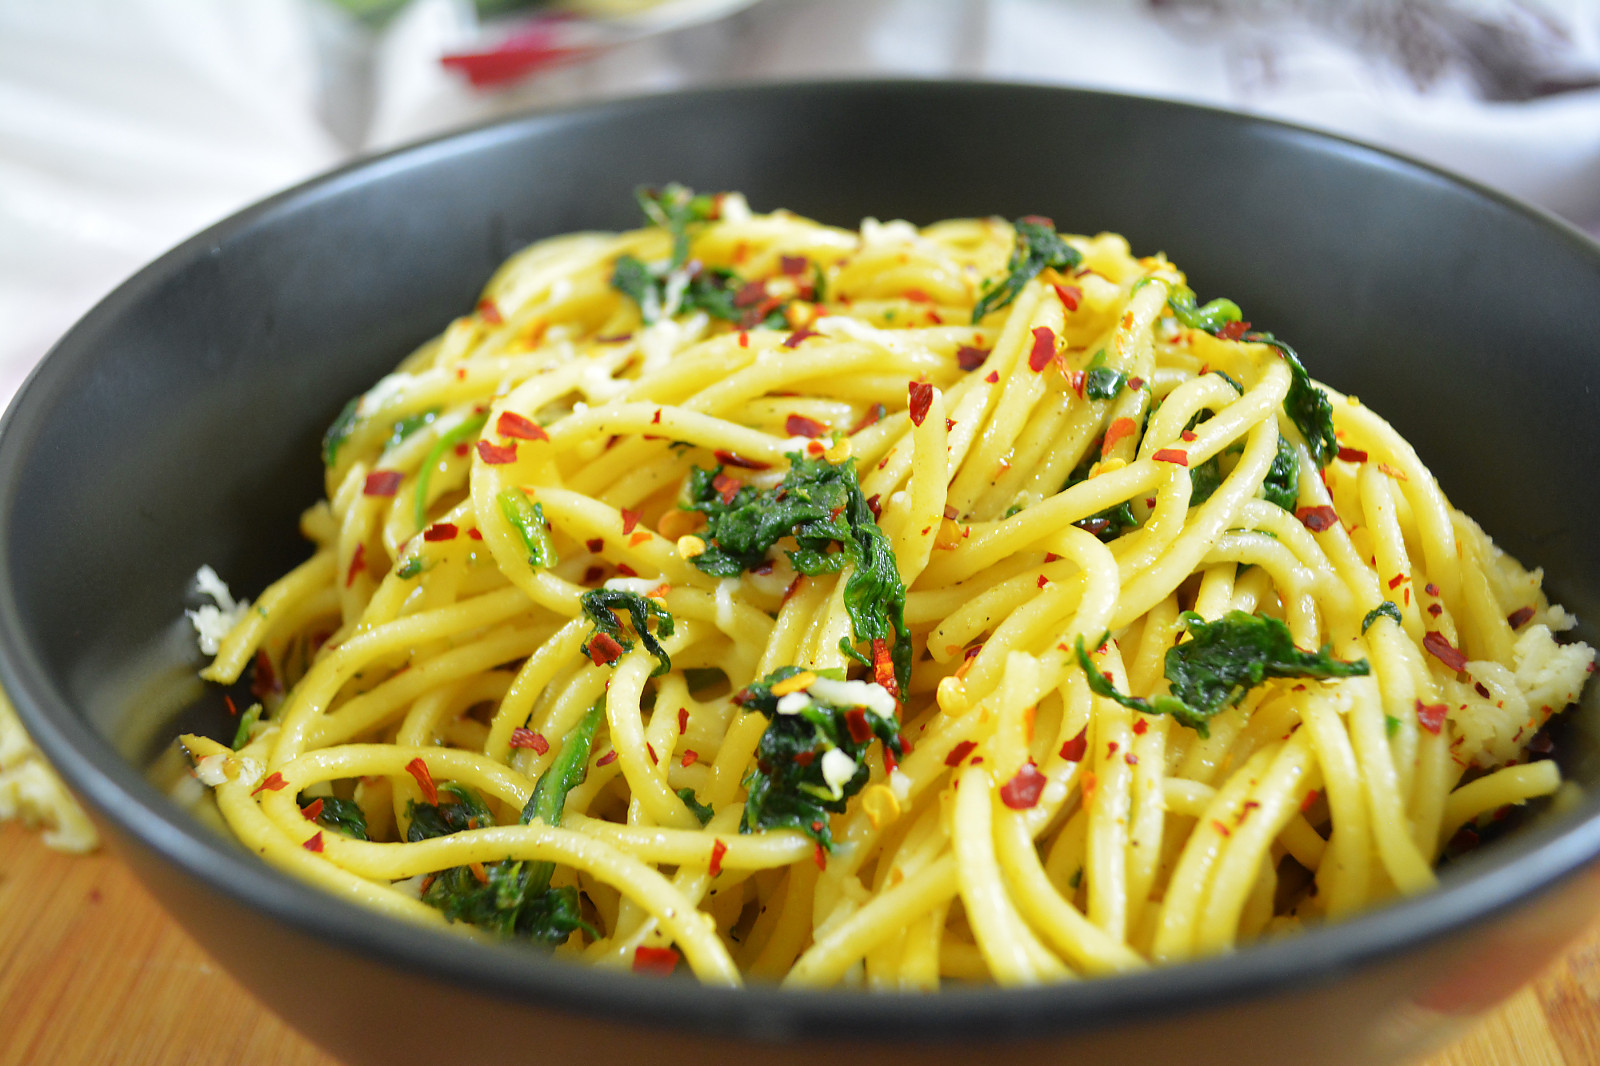 Spaghetti Aglio Olio With Parmesan & Greens Recipe